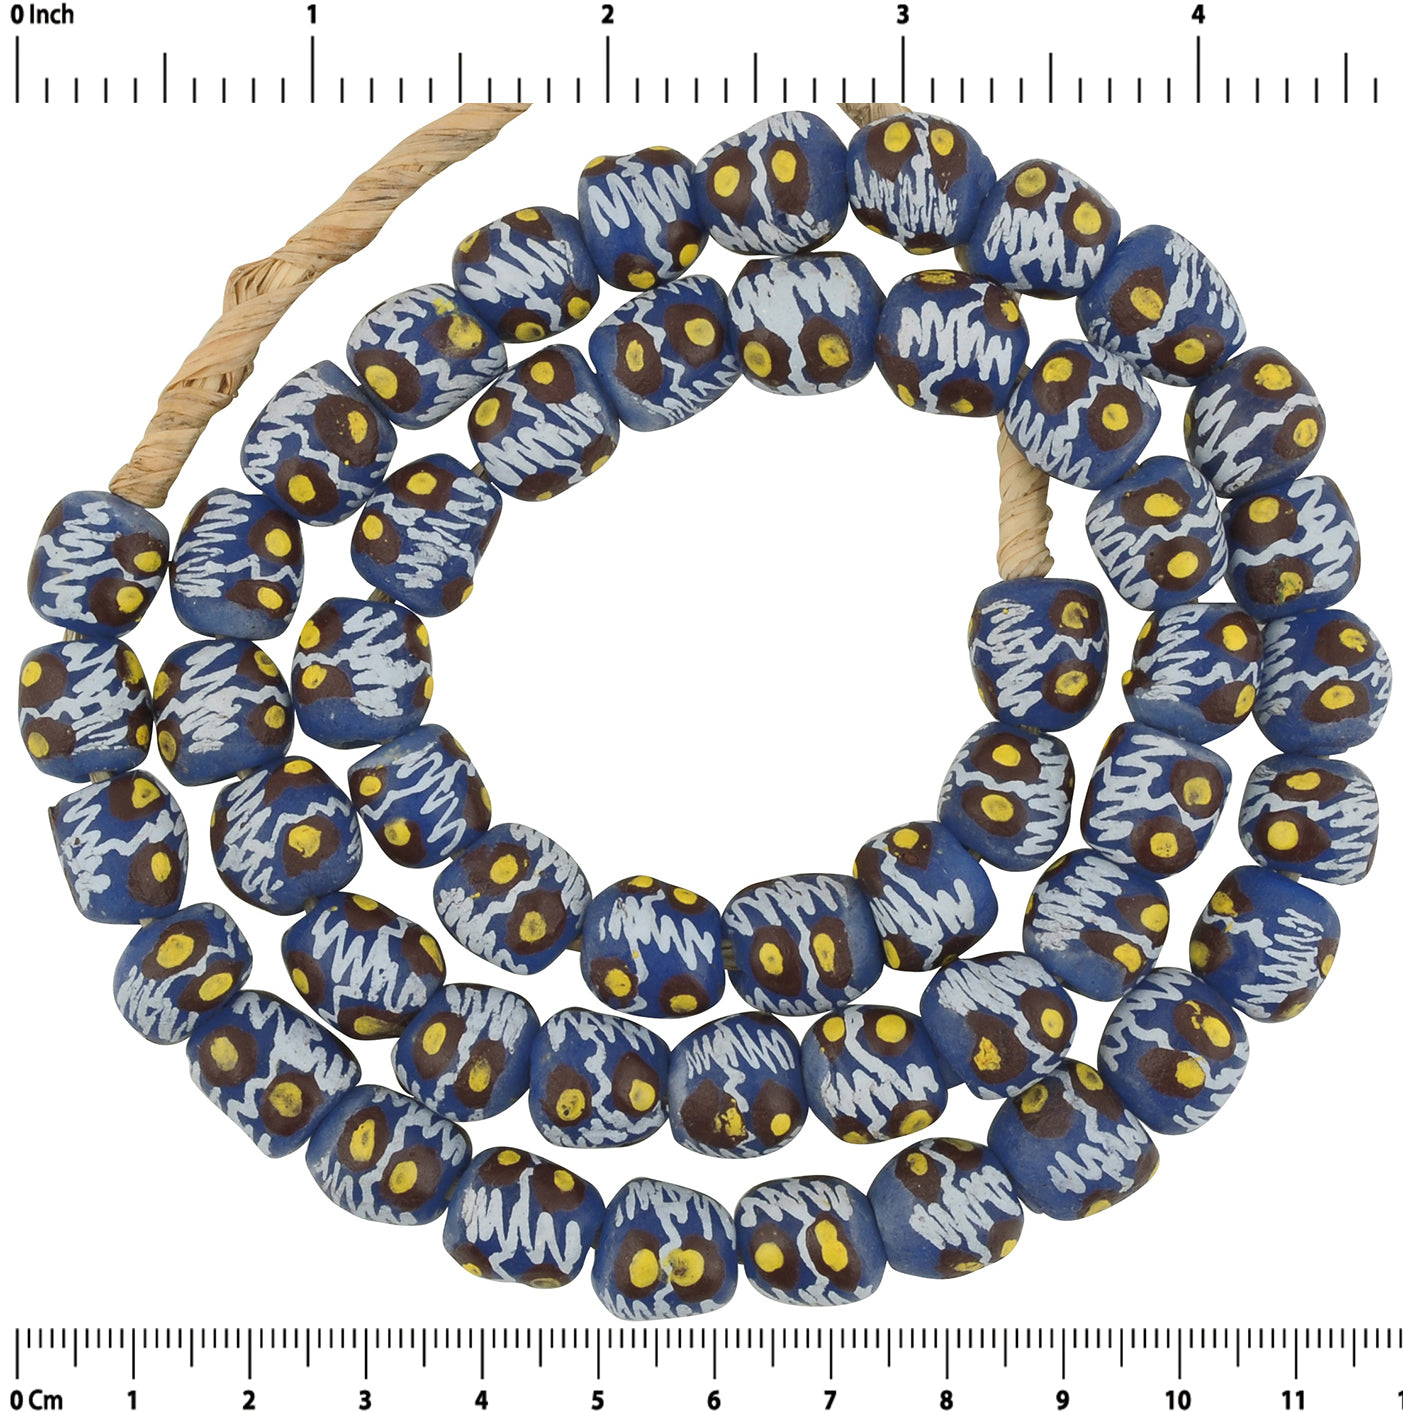 Handgemachte afrikanische Perlen Halskette aus recyceltem Glaspulver Ghana Schmuck - Tribalgh